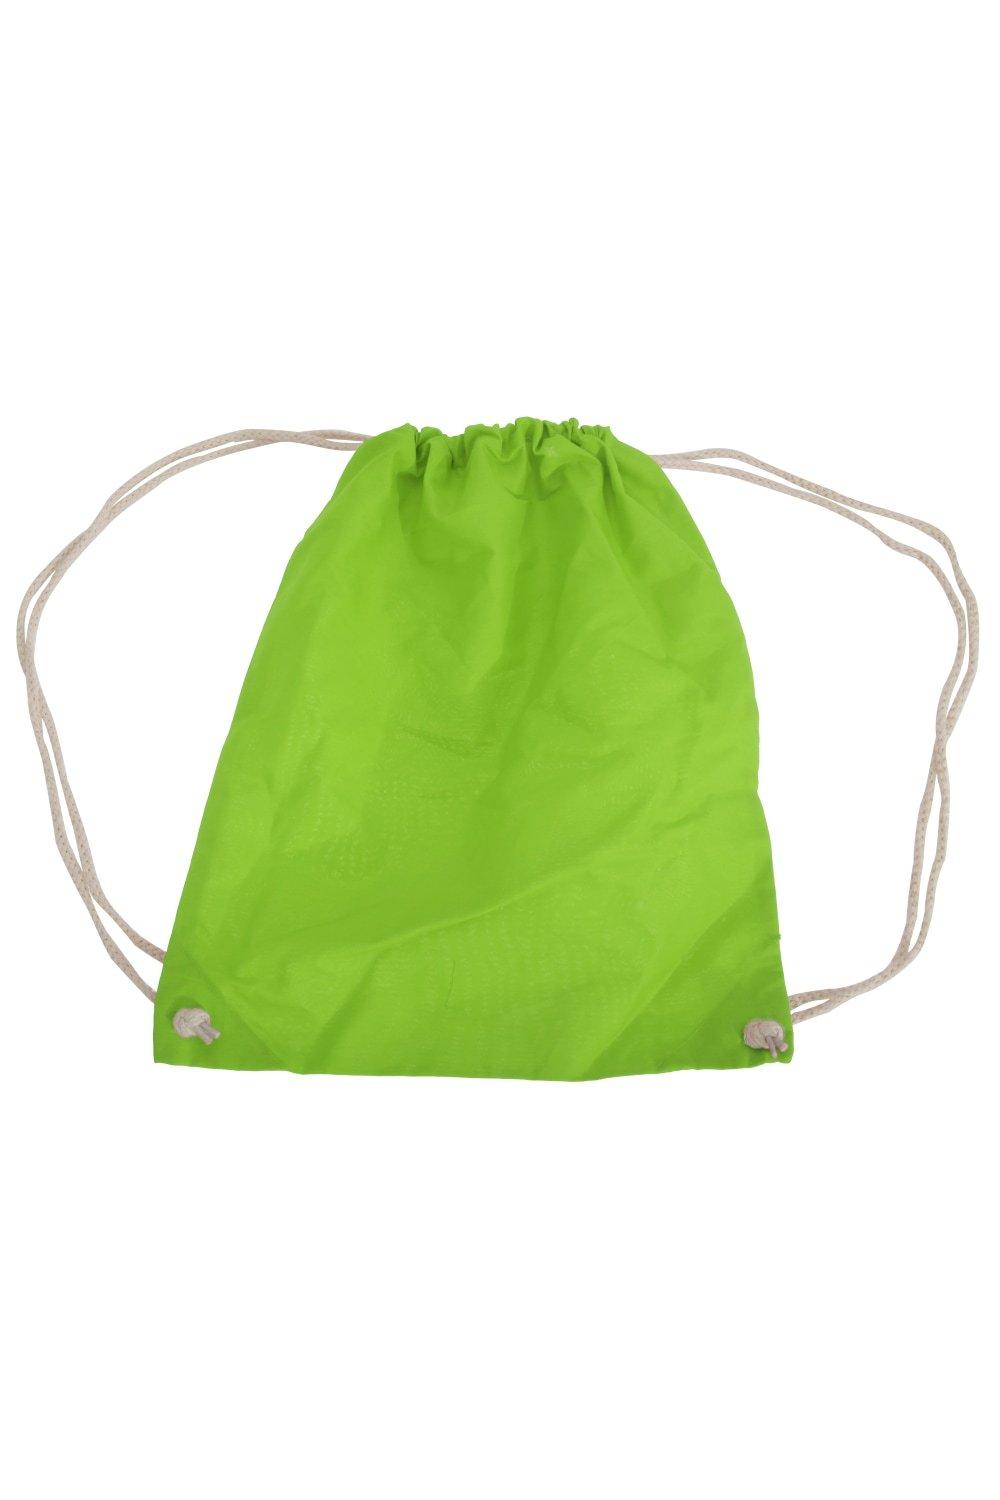 Хлопковая сумка Gymsac - 12 литров (2 шт. в упаковке) Westford Mill, зеленый